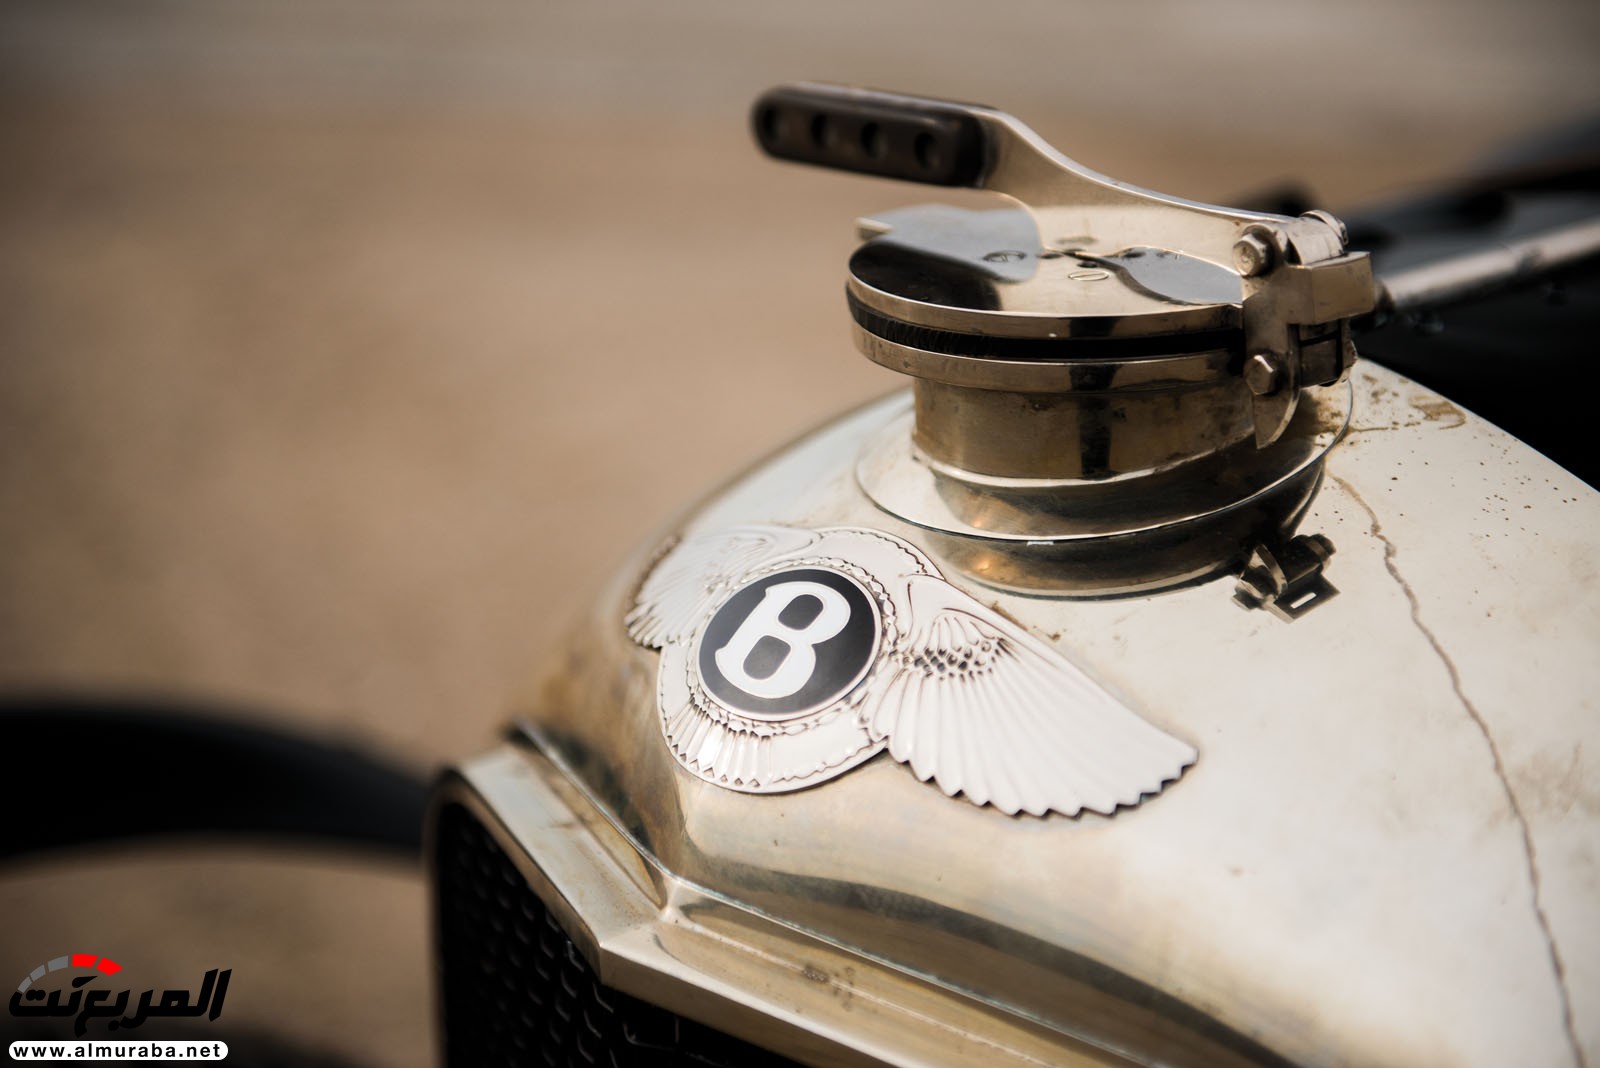 "بالصور" سيارة بنتلي موديل 1928 المشاركة في سباقات لومان تعرض بـ 7 مليون دولار في مزاد علني 92